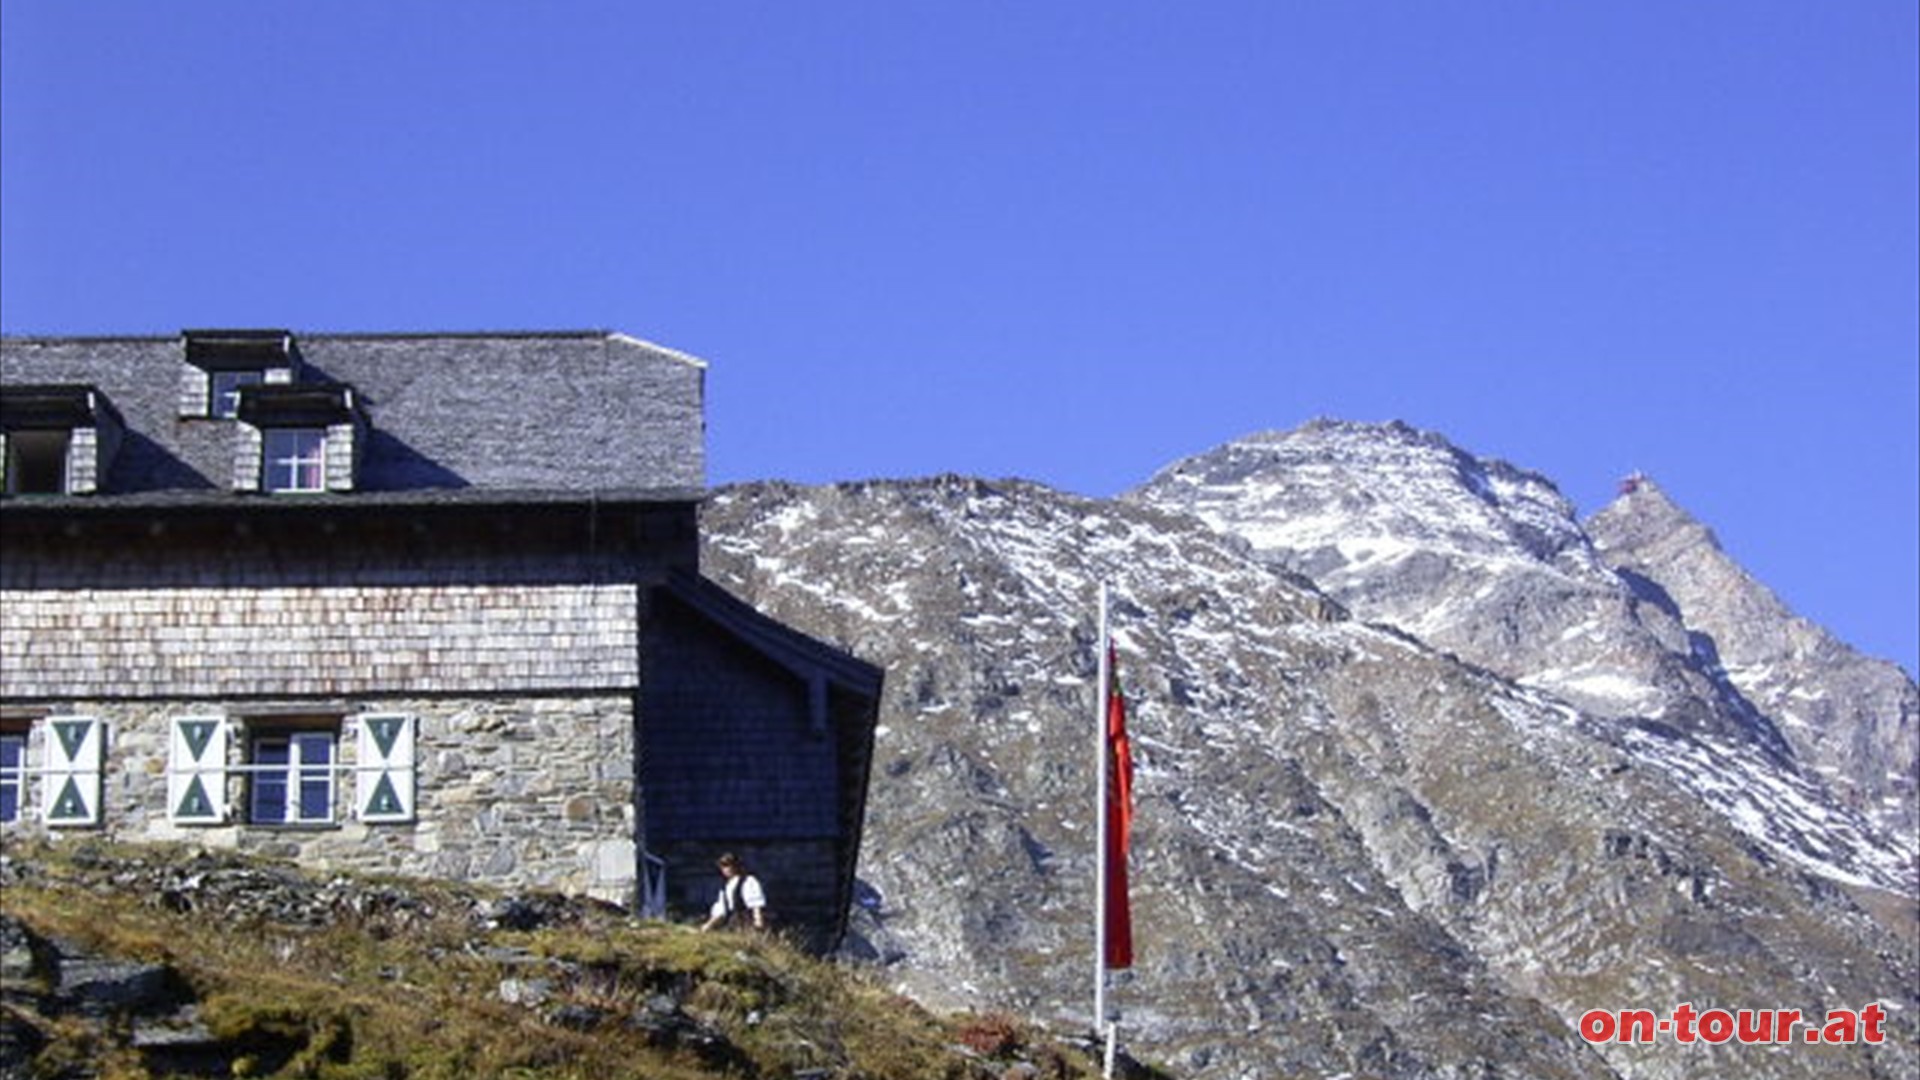 Schutzhaus Neubau der Naturfreunde Ortsgruppe Rauris: 
ehemalige Knappenunterkunft